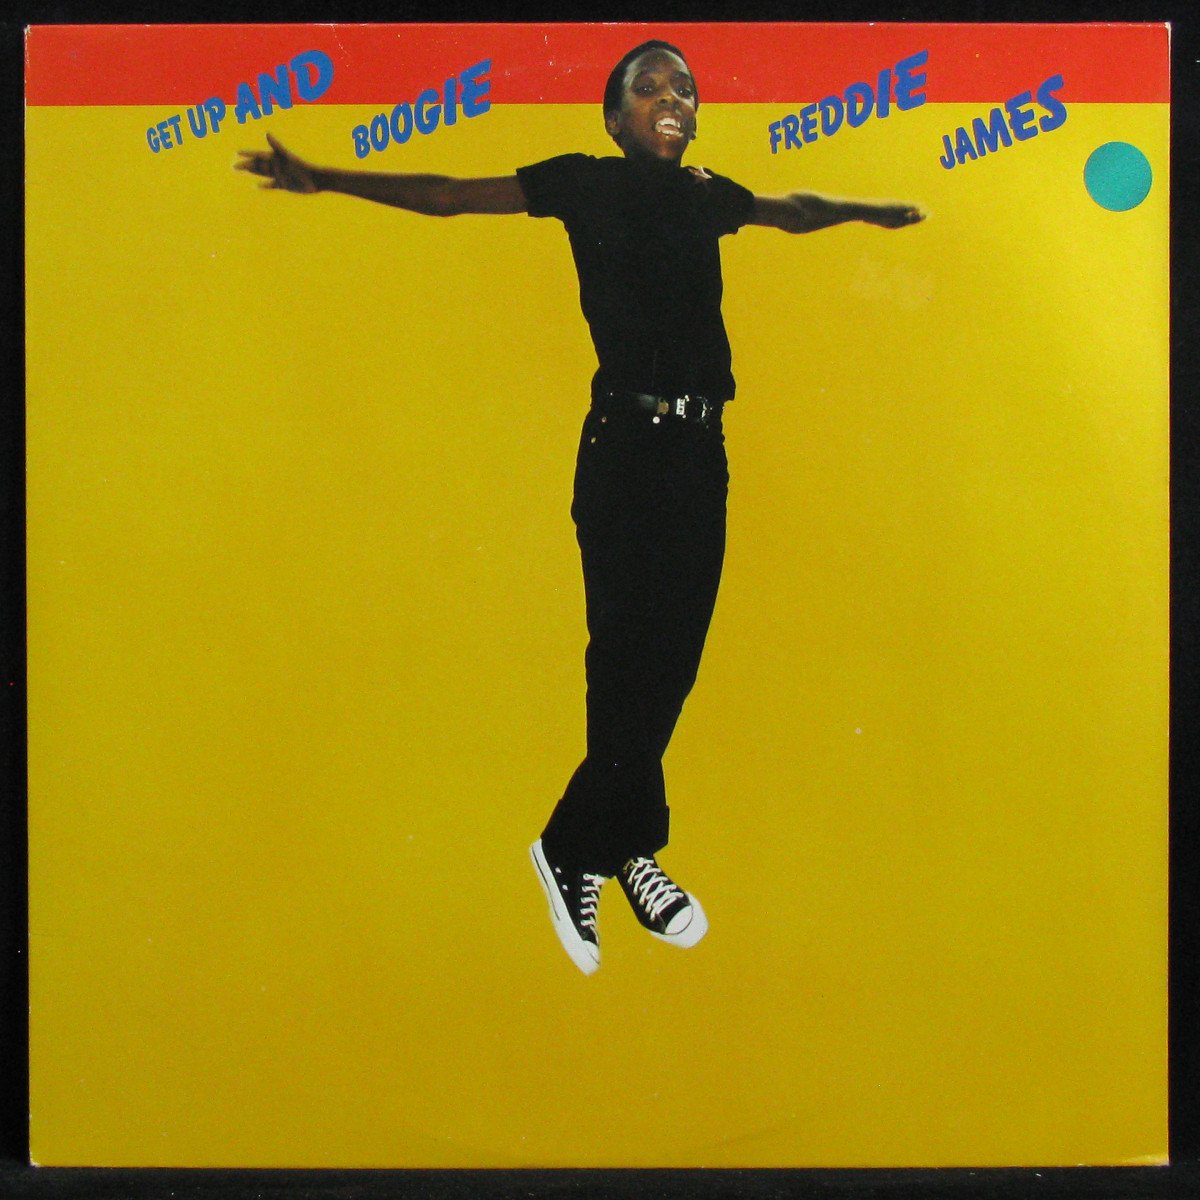 LP Freddie James — Get Up And Boogie фото